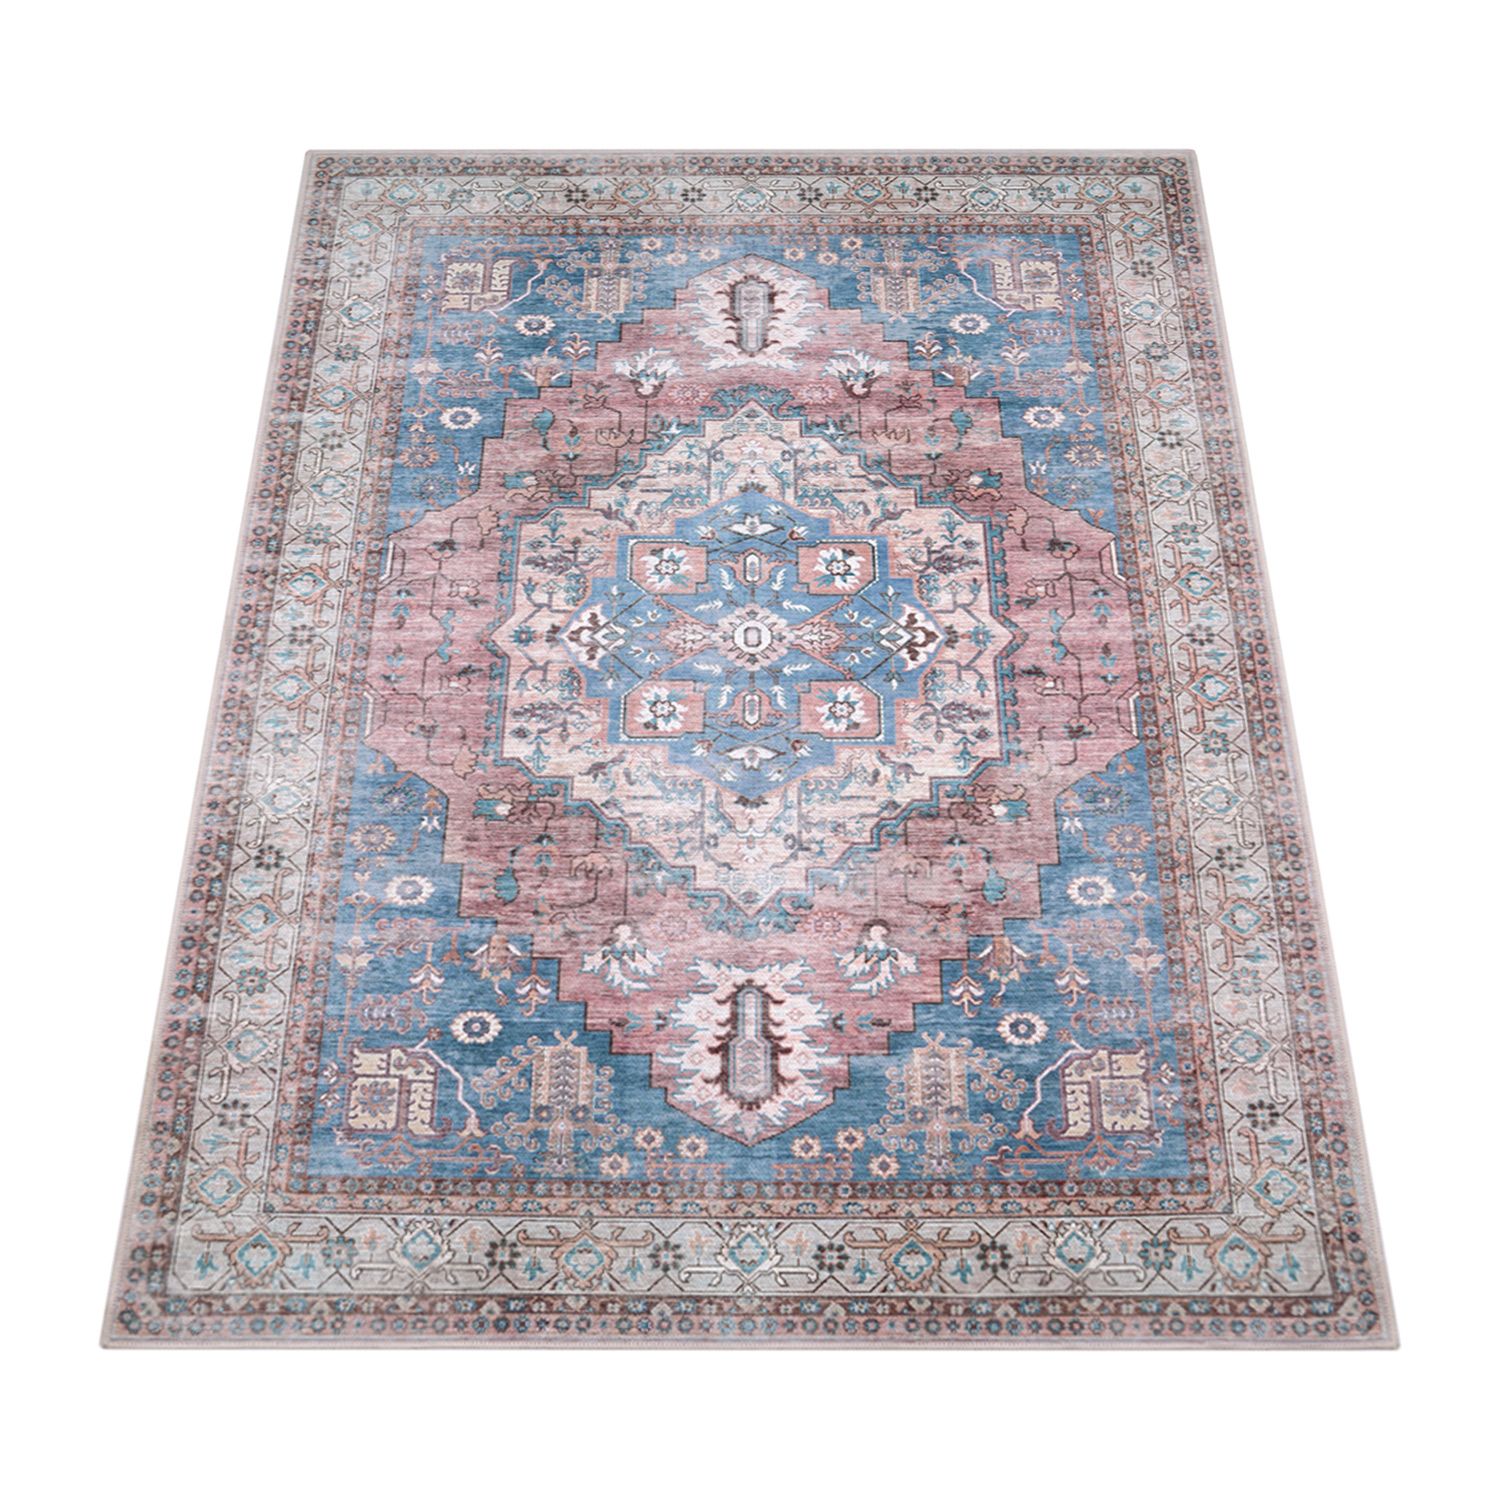 Teppich Esszimmer Mandala Muster Ornamente Modern Mehrfarbig Orientalisch